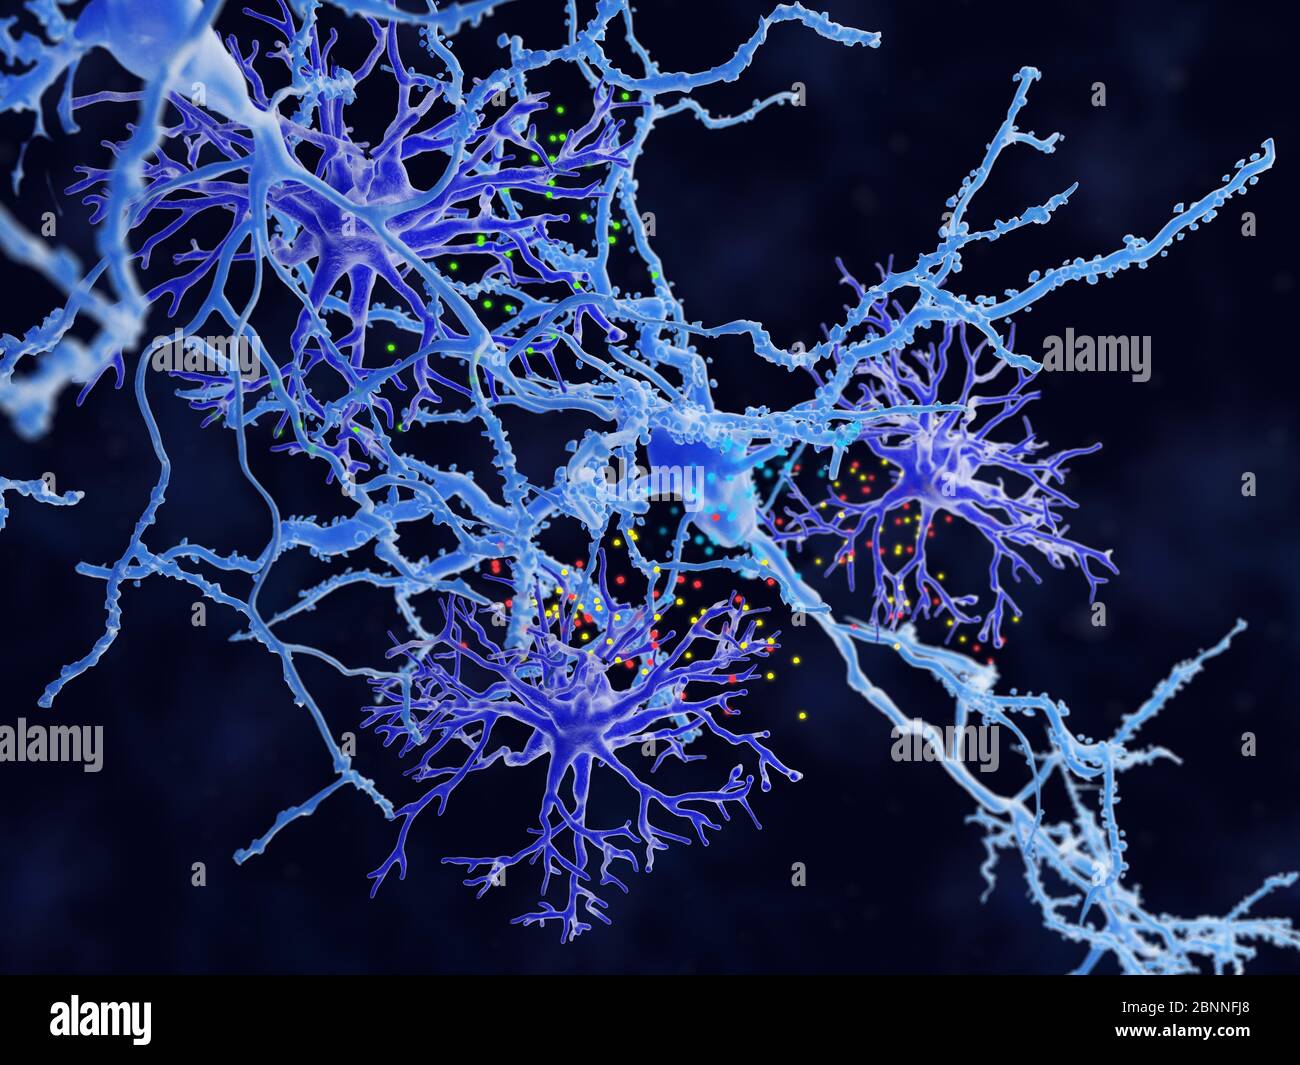 Illustration d'astrocytes protoplasmiques (violet). Les astrocytes sont un type de cellule gliale. Ils fournissent un soutien structurel et une protection aux neurones (cellules nerveuses, bleu) et leur fournissent également des nutriments et de l'oxygène. Les astrocytes sont subdivisés en types fibreux et protoplasmiques. Les astrocytes protoplasmiques sont présents dans la matière grise du cerveau et ont des processus relativement courts qui se rattachant aux corps cellulaires des neurones. Banque D'Images